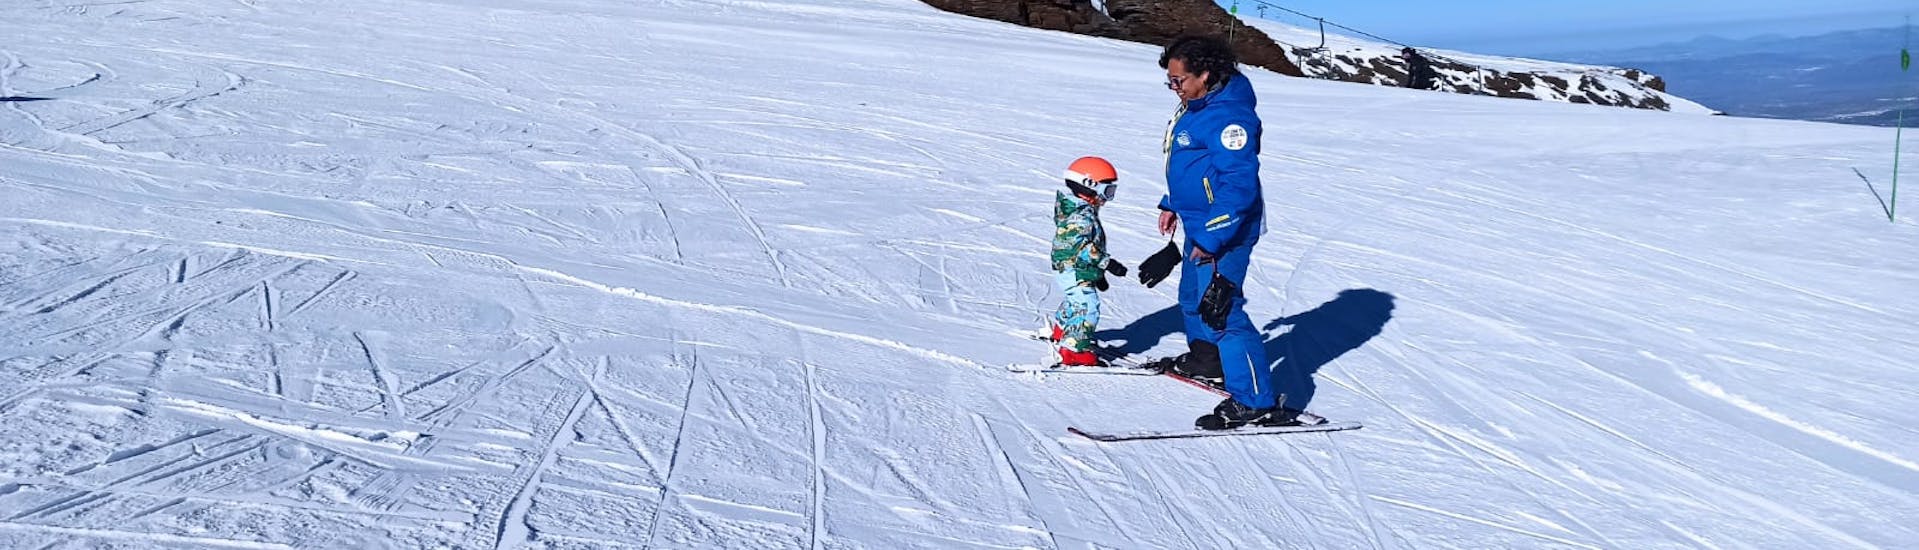 Kinder lernen das Skifahren während eines Skikurses für alle Levels mit der Escuela Universal de Ski Sierra Nevada.